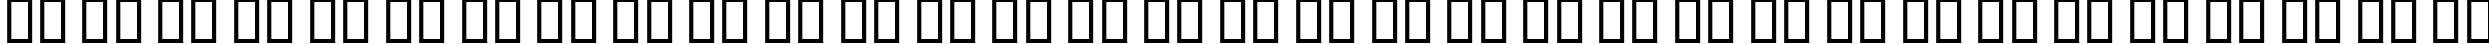 Пример написания русского алфавита шрифтом B Kaj